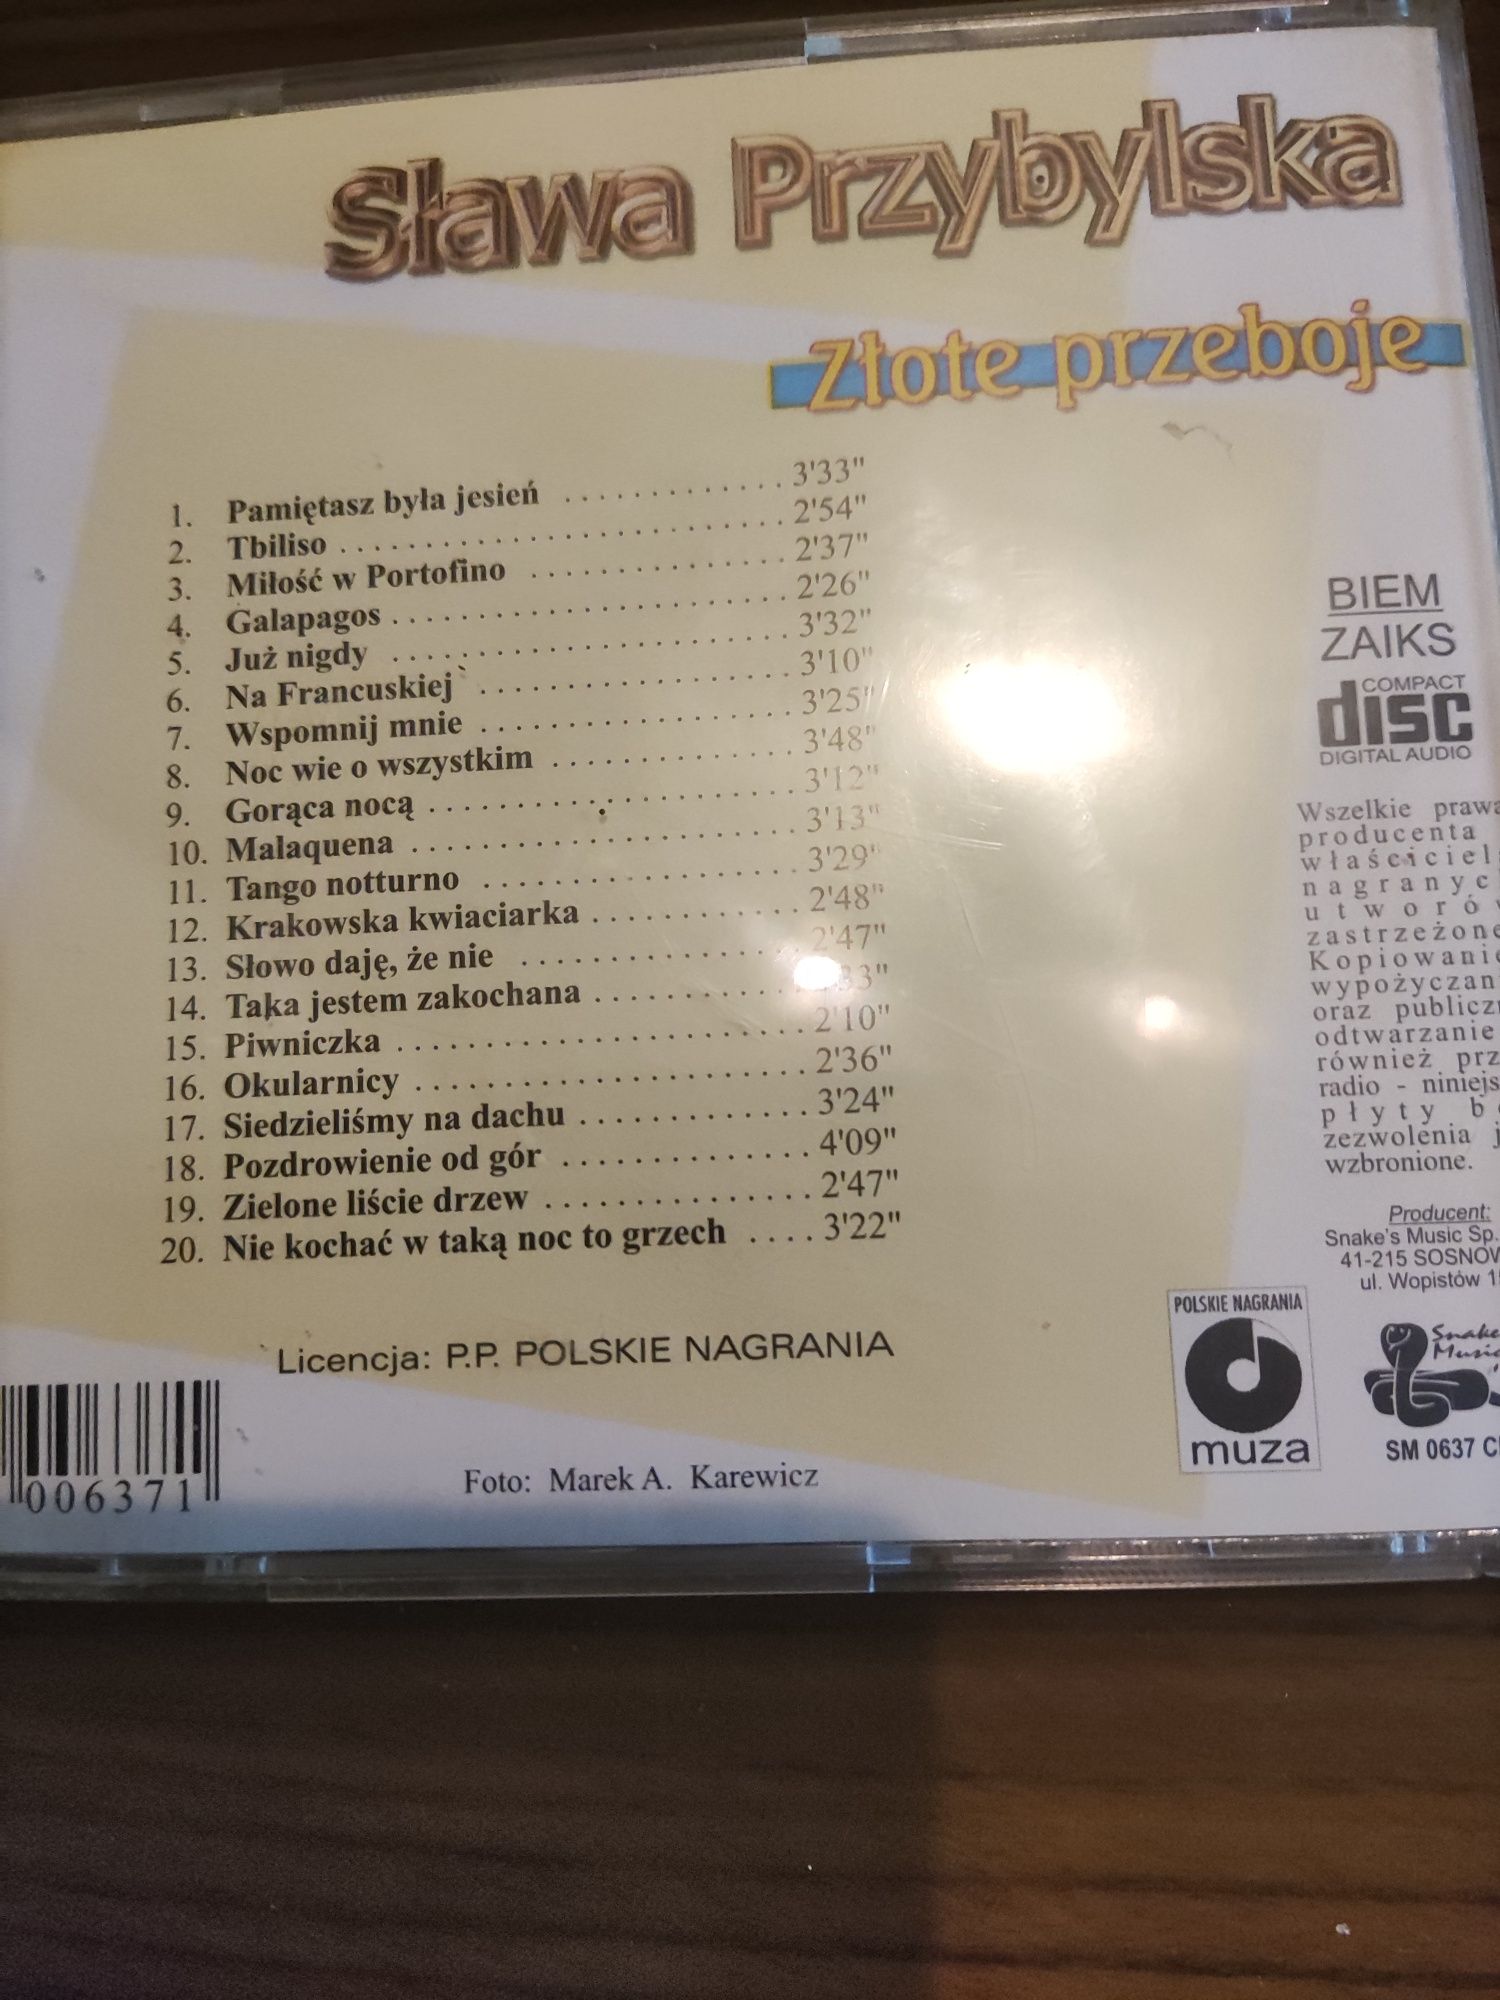 Sława Przybylska "Złote przeboje" - płyta CD